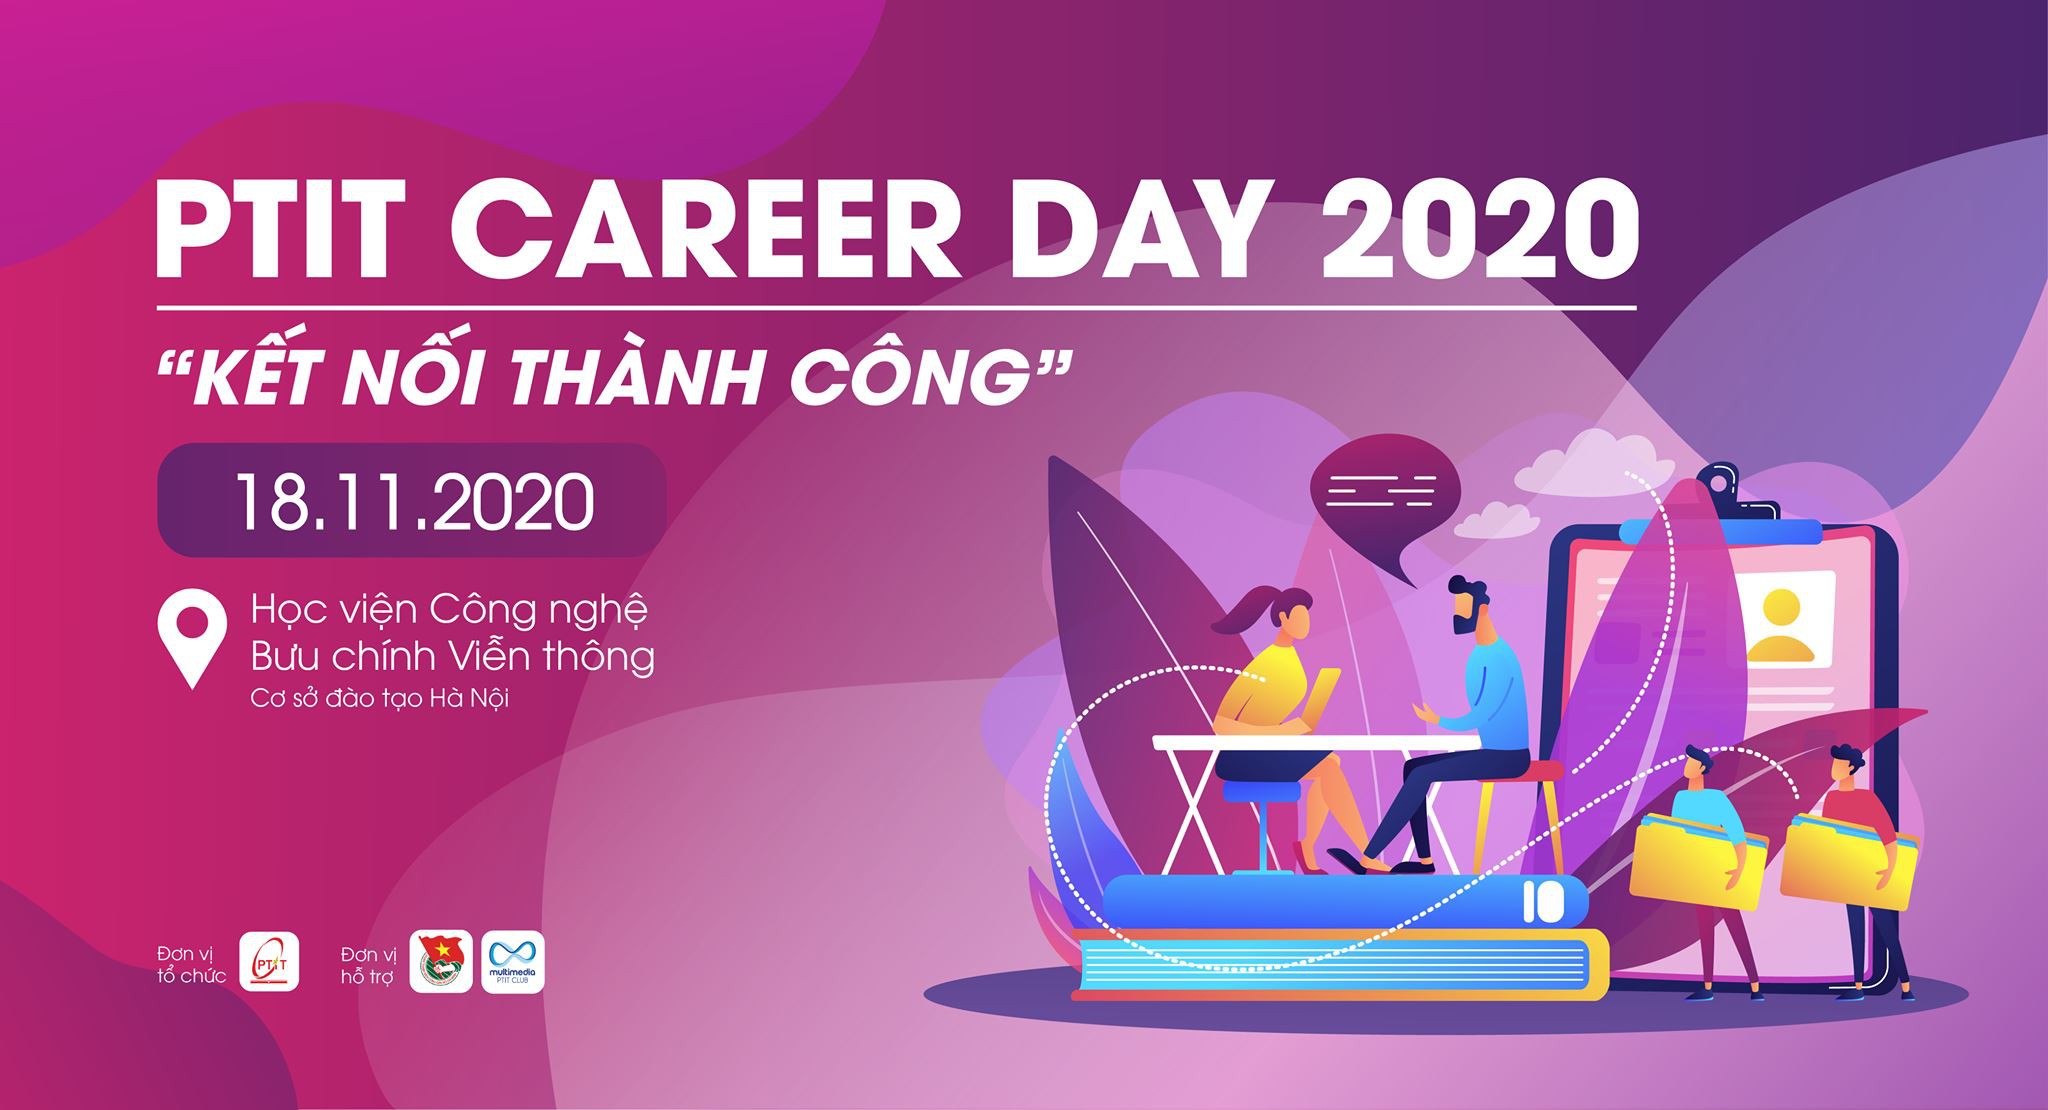 Ngày hội tuyển dụng PTIT Career Day 2020